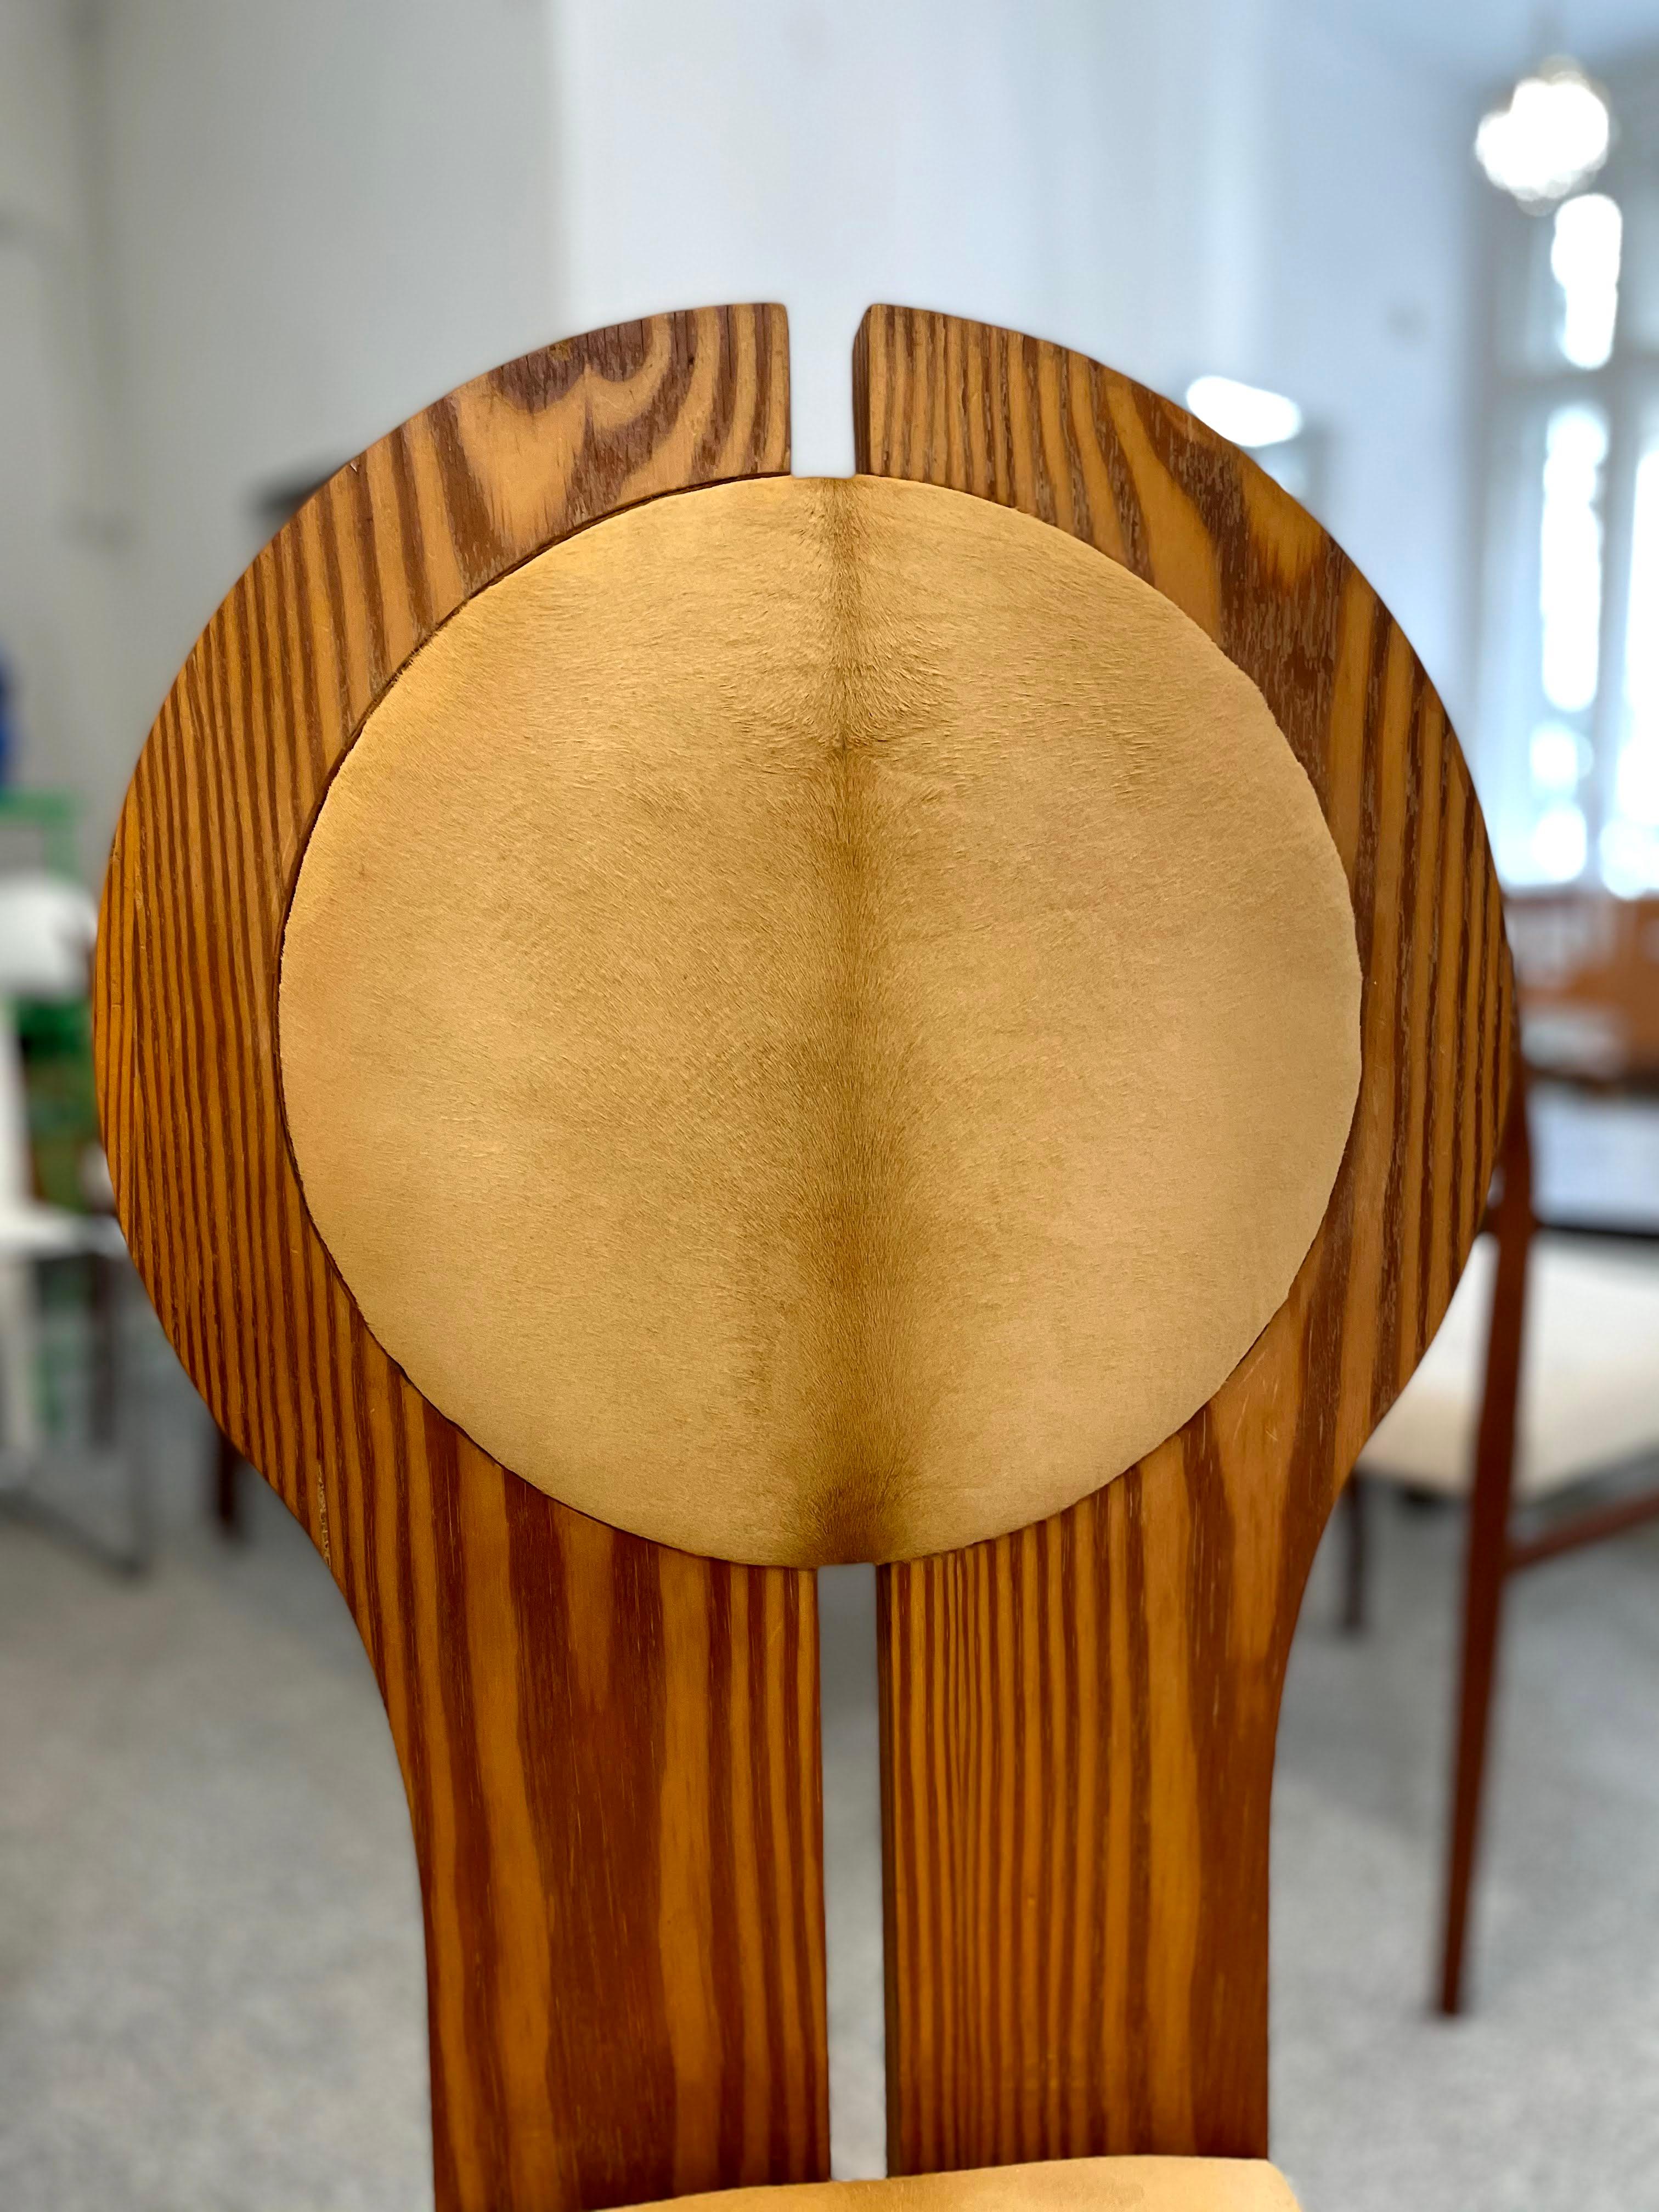 Pine Hungarian Ponyskin Upholstered Studio Craft Chair in Organic Design, 1970